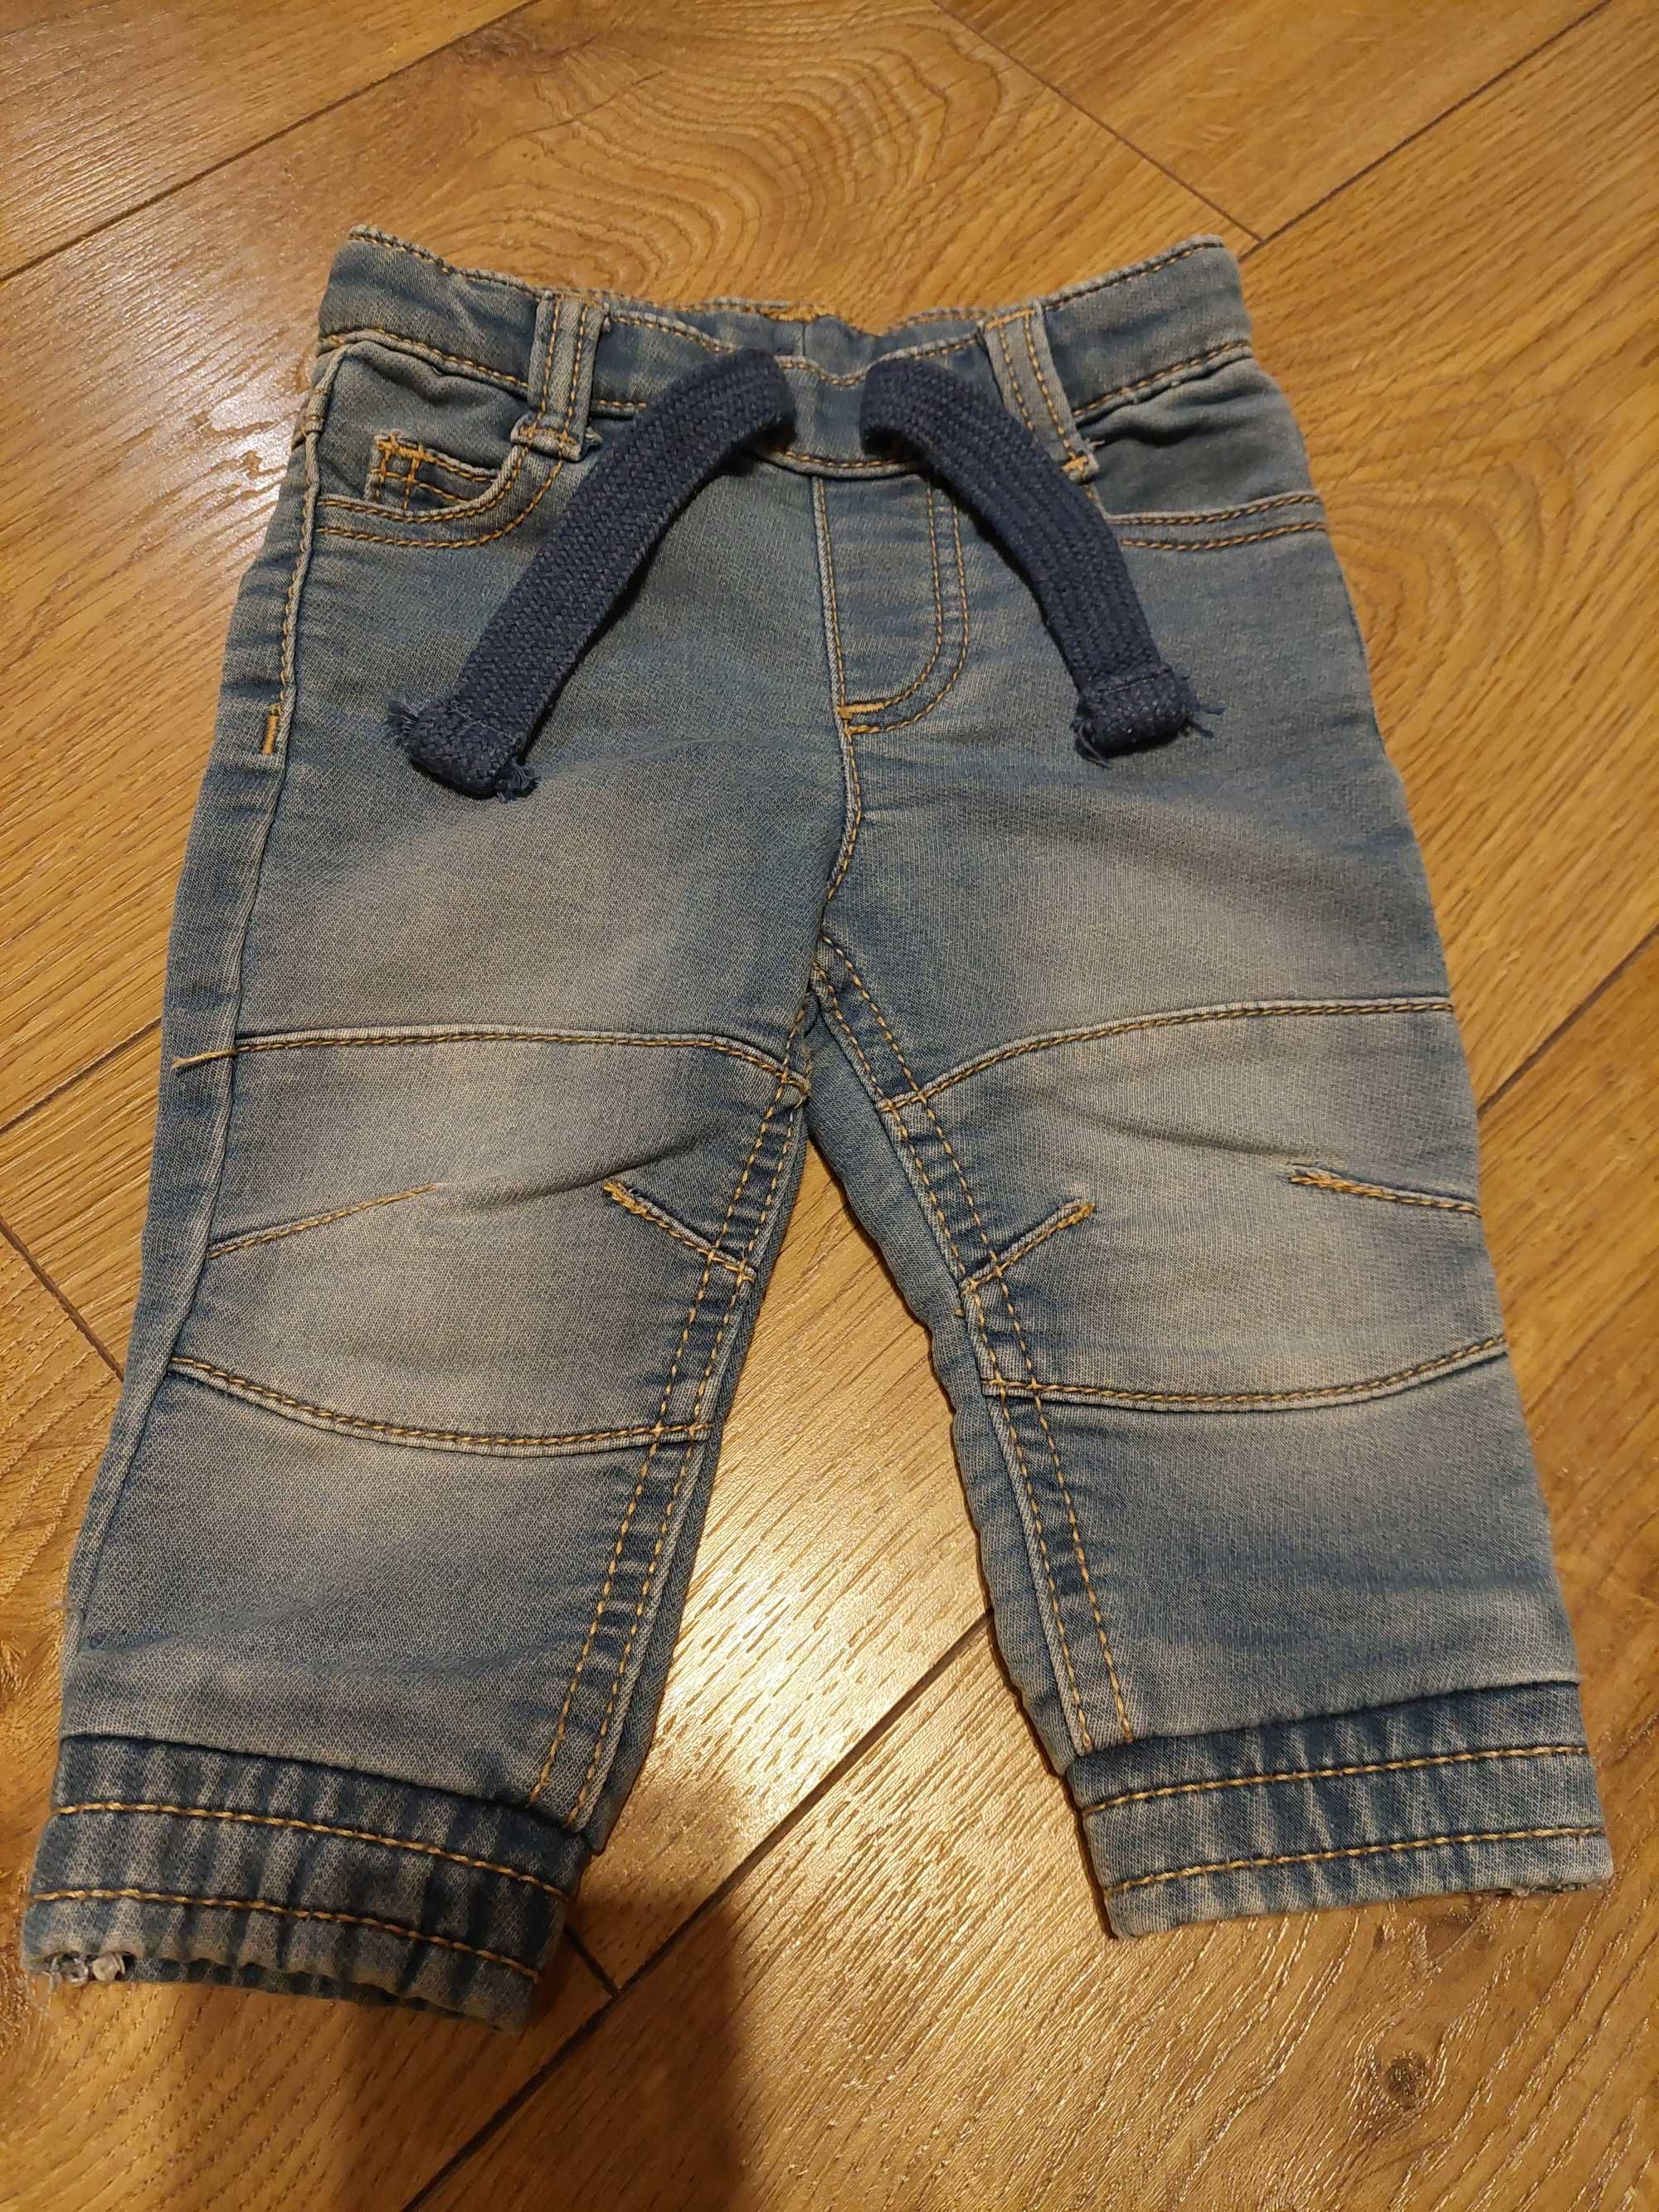 Spodnie spodenki niemowlęce zestaw 6 par r. 68 jeansy dresy